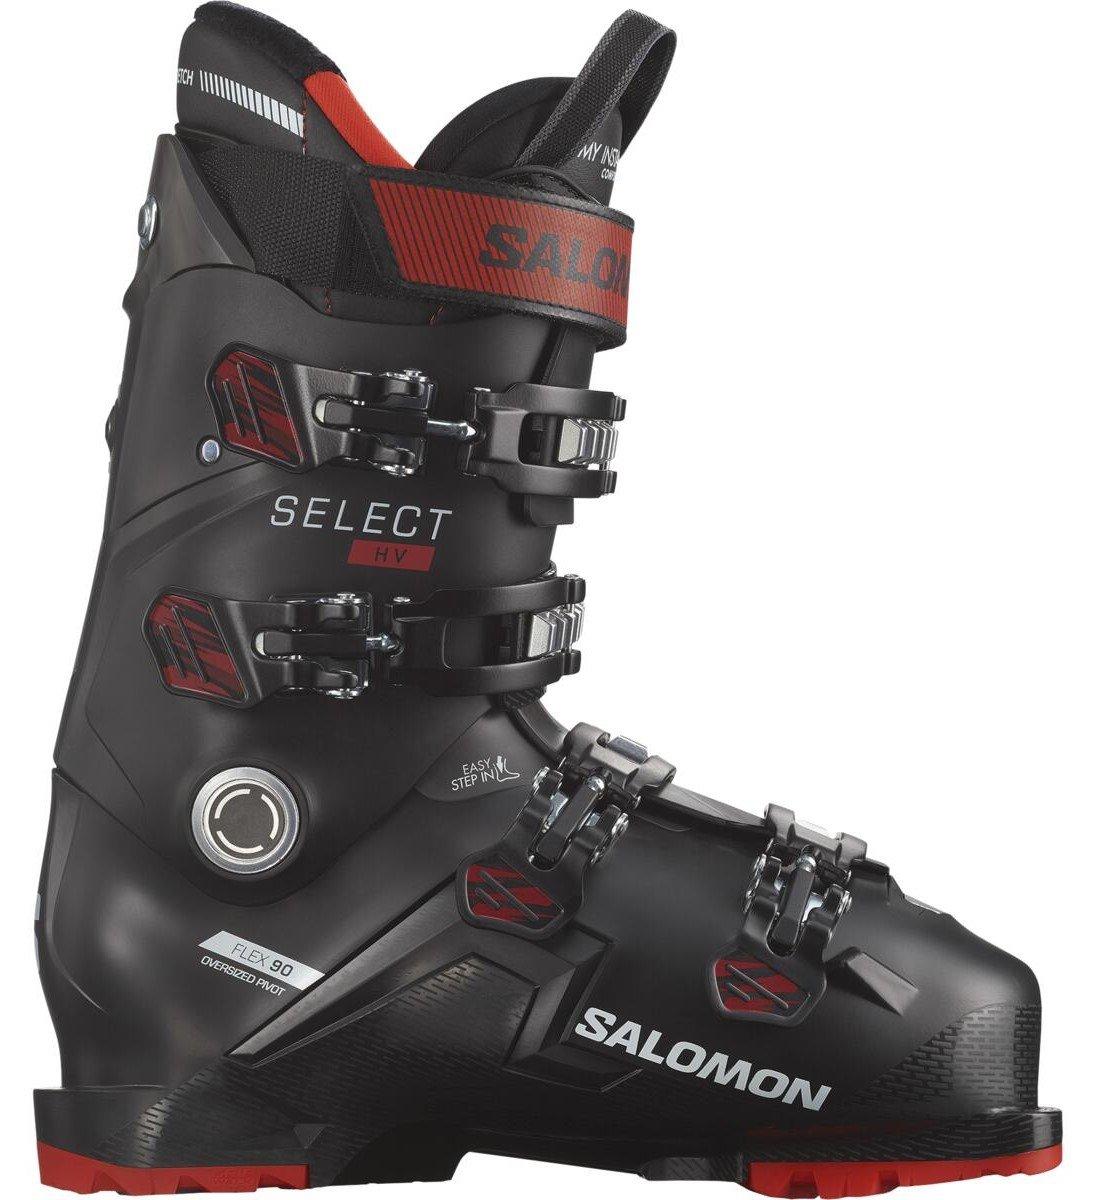 Pánske lyžiarky Salomon Select HV 90 Veľkosť: 27 cm